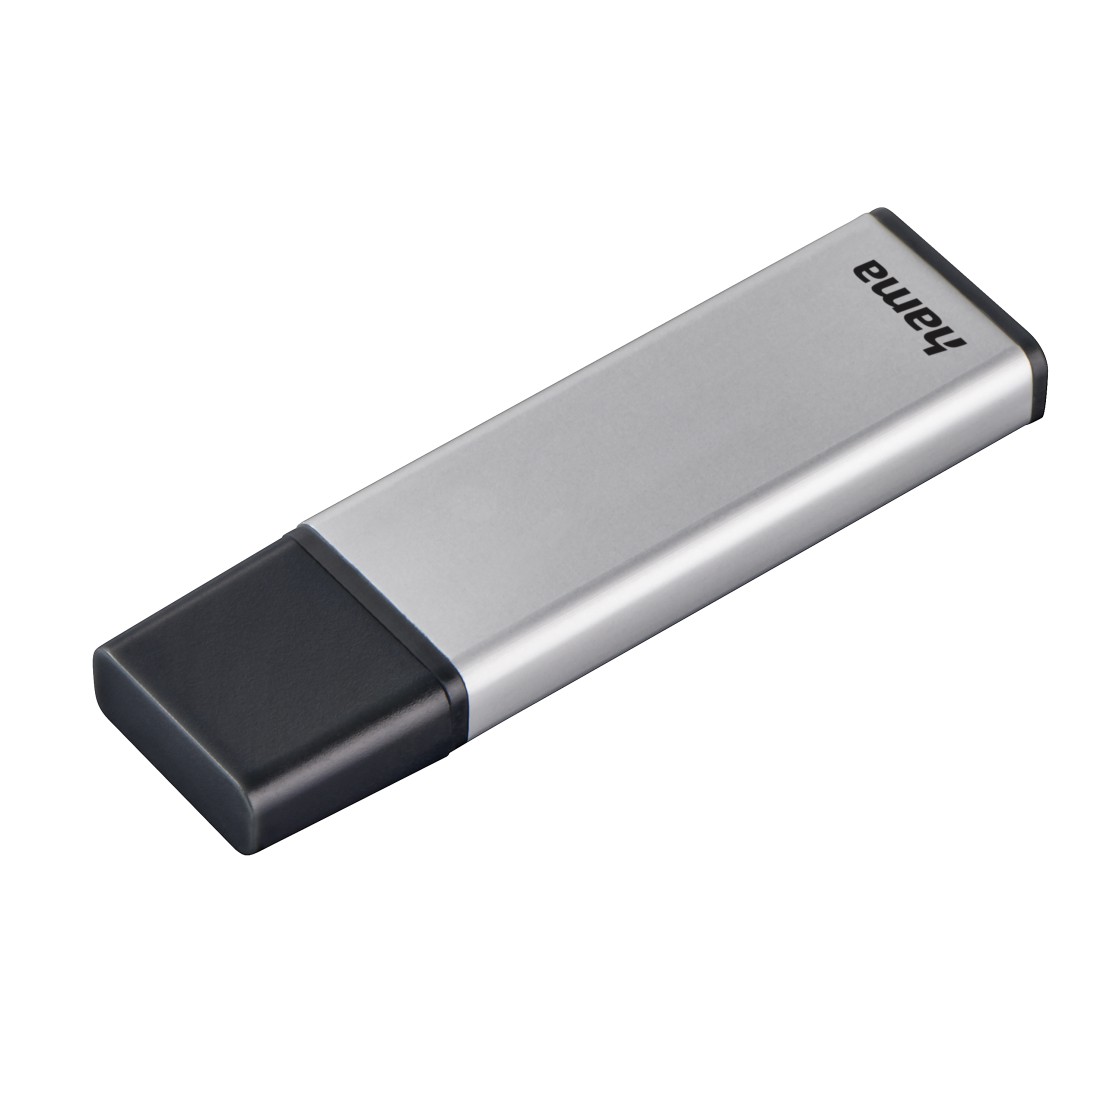 00181053 Hama "Classic" USB Stick, USB 3.0, 64 GB, 70 MB/s, silver